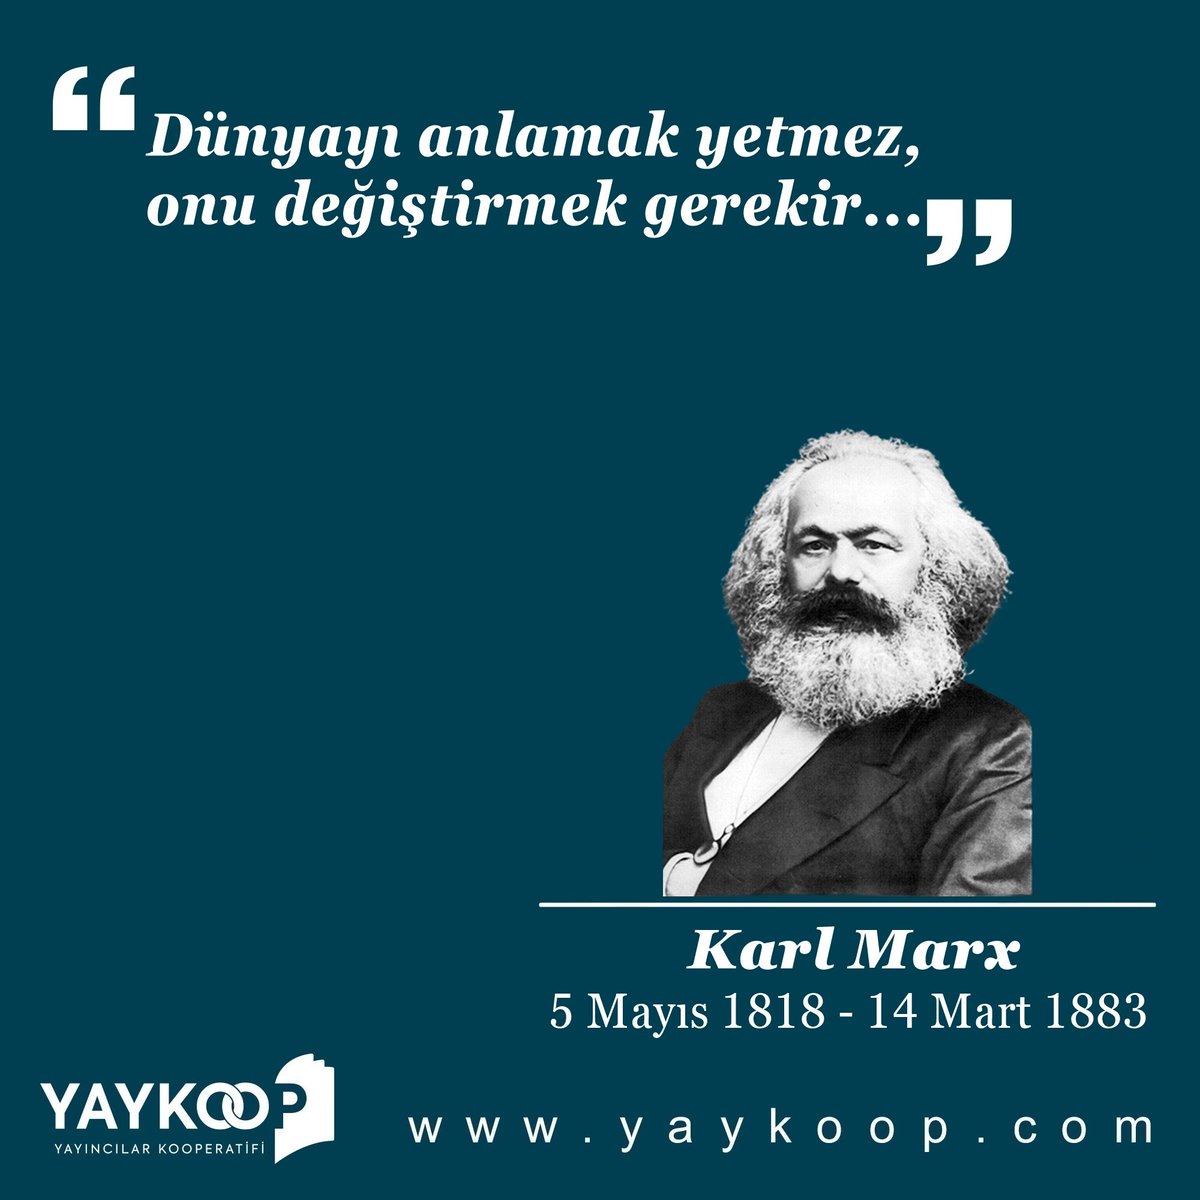 'Proleterlerin zincirlerinden başka kaybedecek bir şeyleri yok. Oysa kazanacakları bir dünya var. Tüm ülkelerin işçileri, birleşin!' Bilimsel sosyalizmin kurucusu, büyük devrimci Karl Marx, 206 yaşında! #KarlMarx #komünistmanifesto #kapital